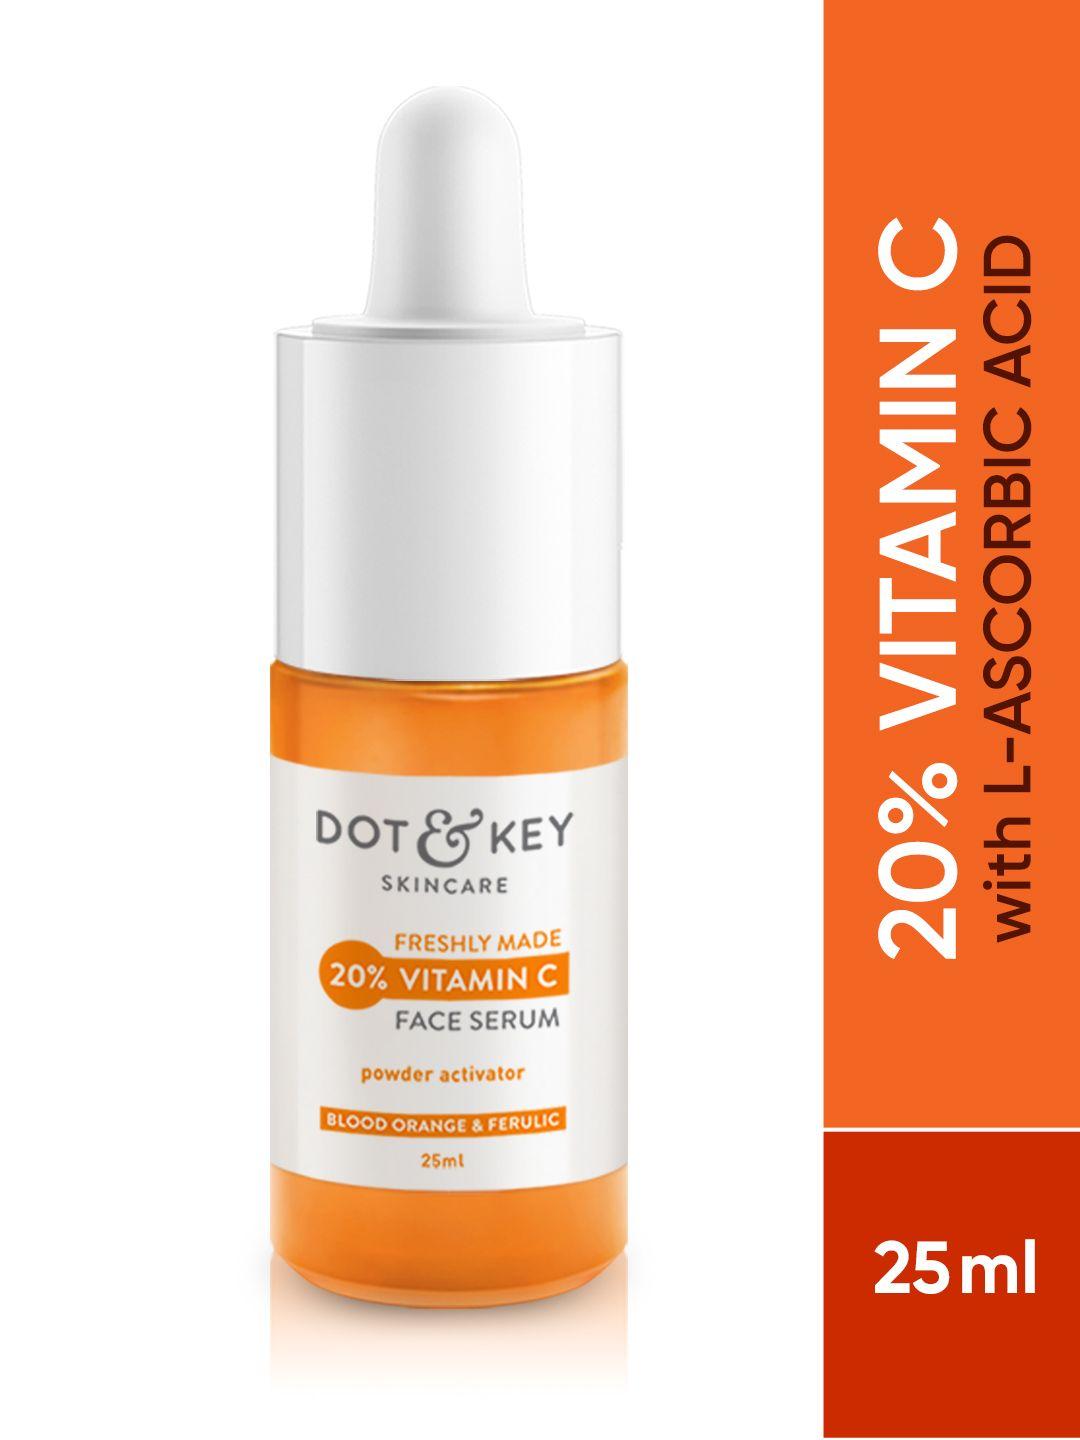 dot & key 20% vitamin c face serum with blood orange & l-ascorbic for glowing skin - 25 ml